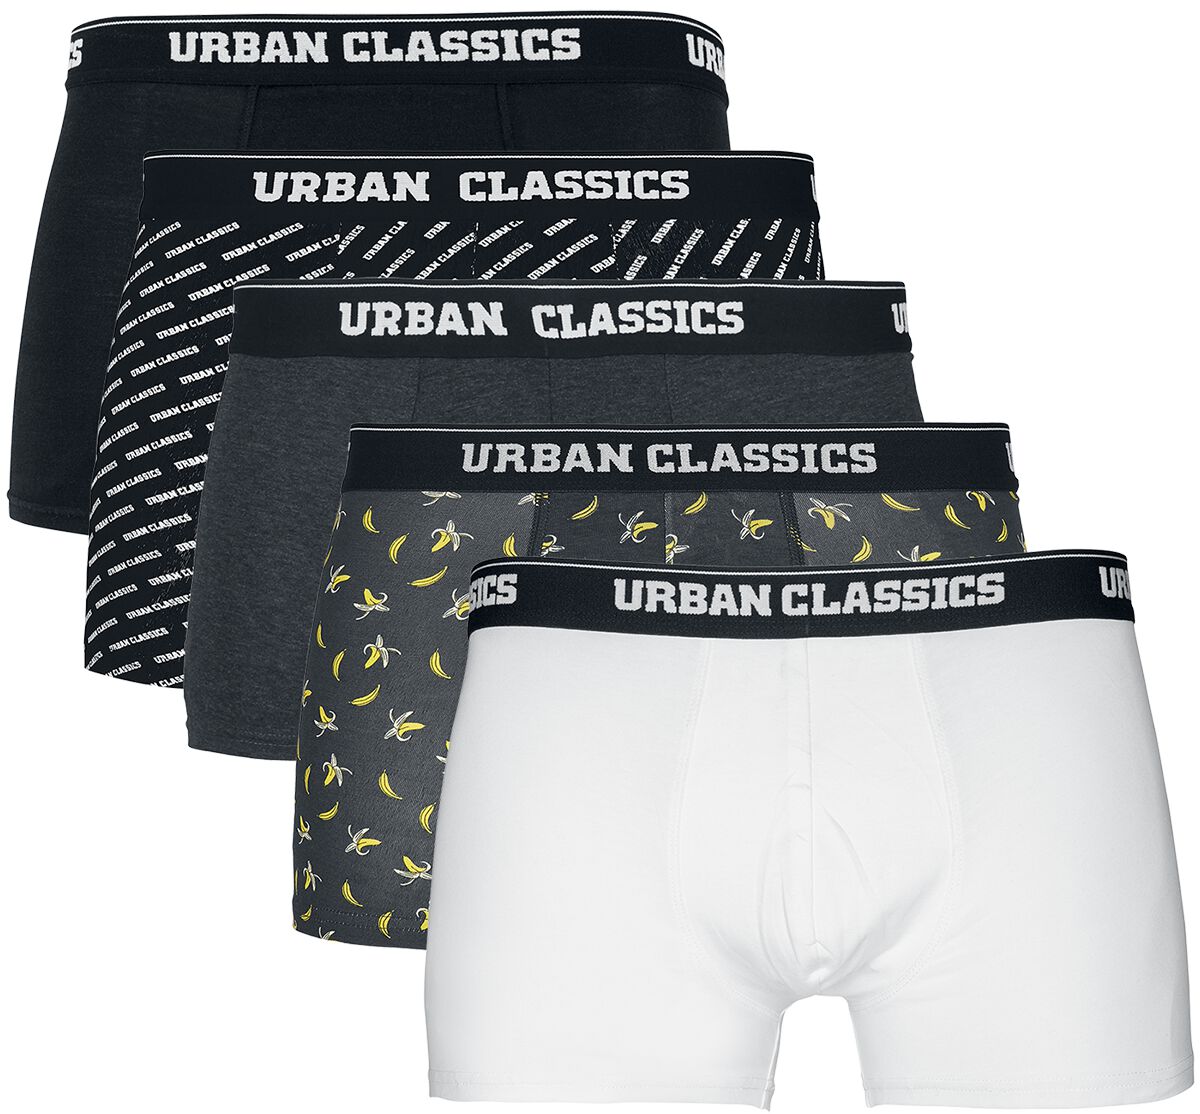 Urban Classics Boxershort-Set - Boxer Shorts 5-Pack - S bis XXL - für Männer - Größe XL - schwarz/grau/weiß